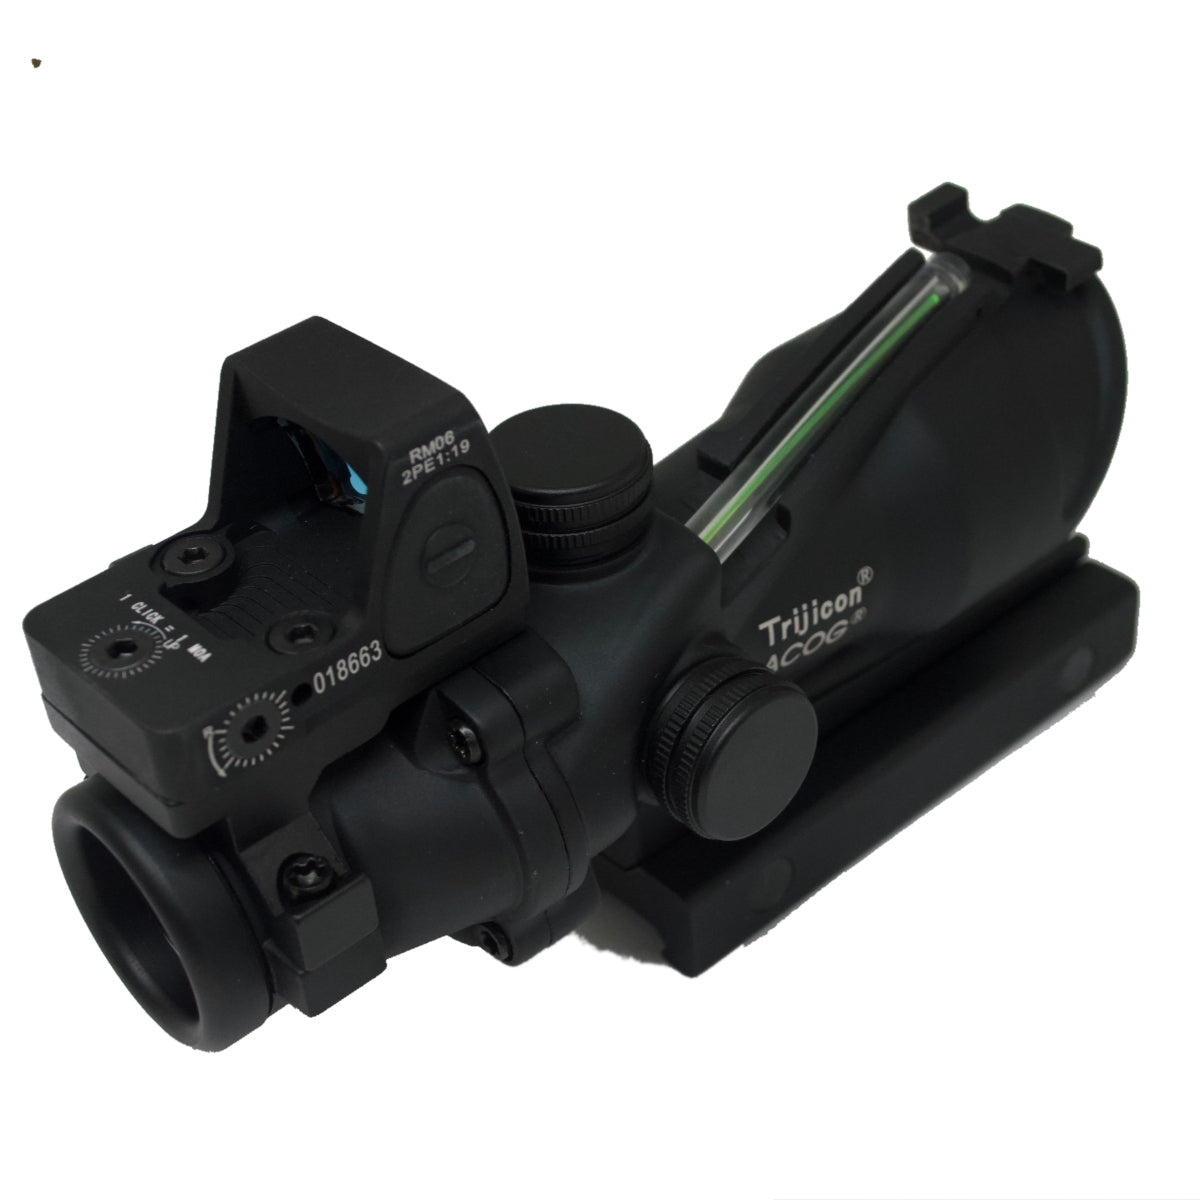 Optic scope - ACOG - AH Tactical 